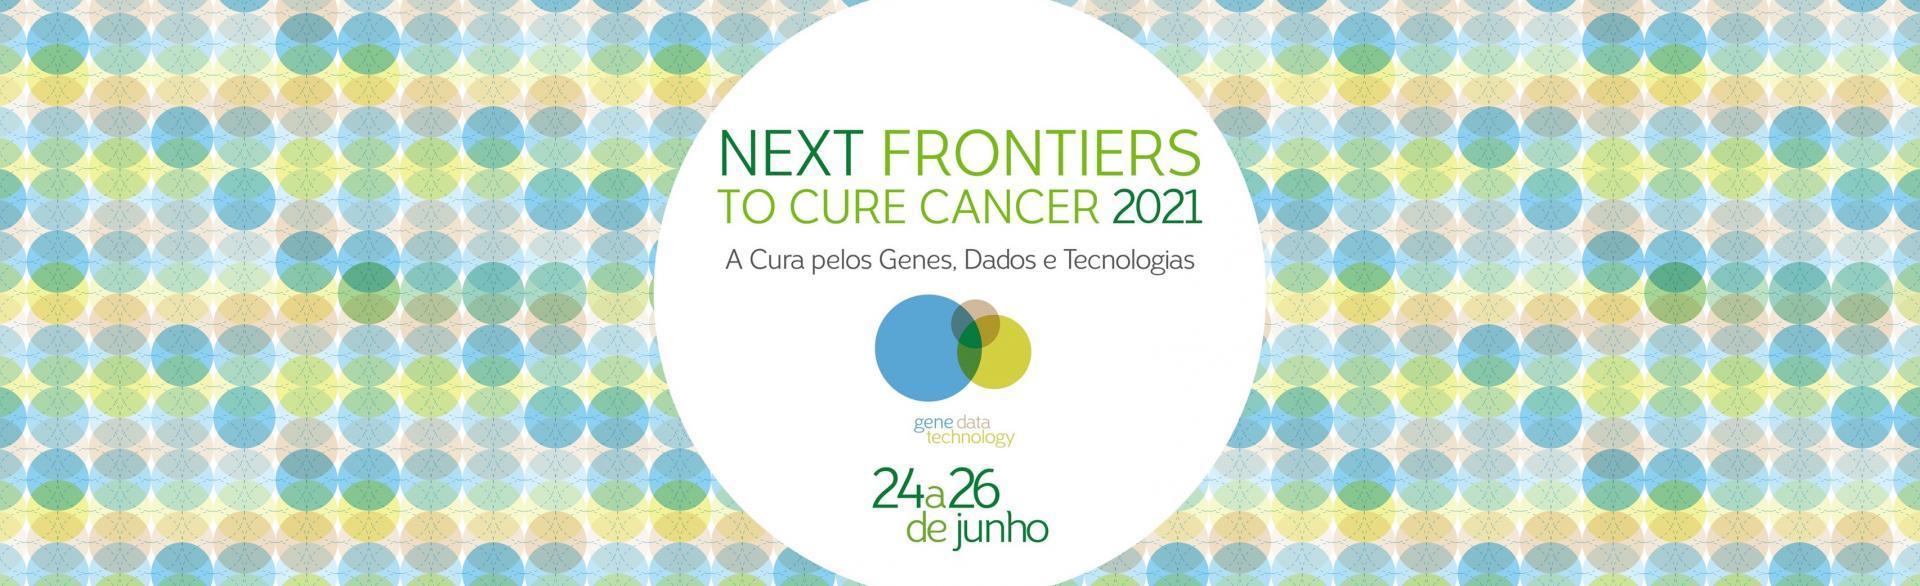 Logo Next Frontiers to The Cancer em branco sob um fundo colorido